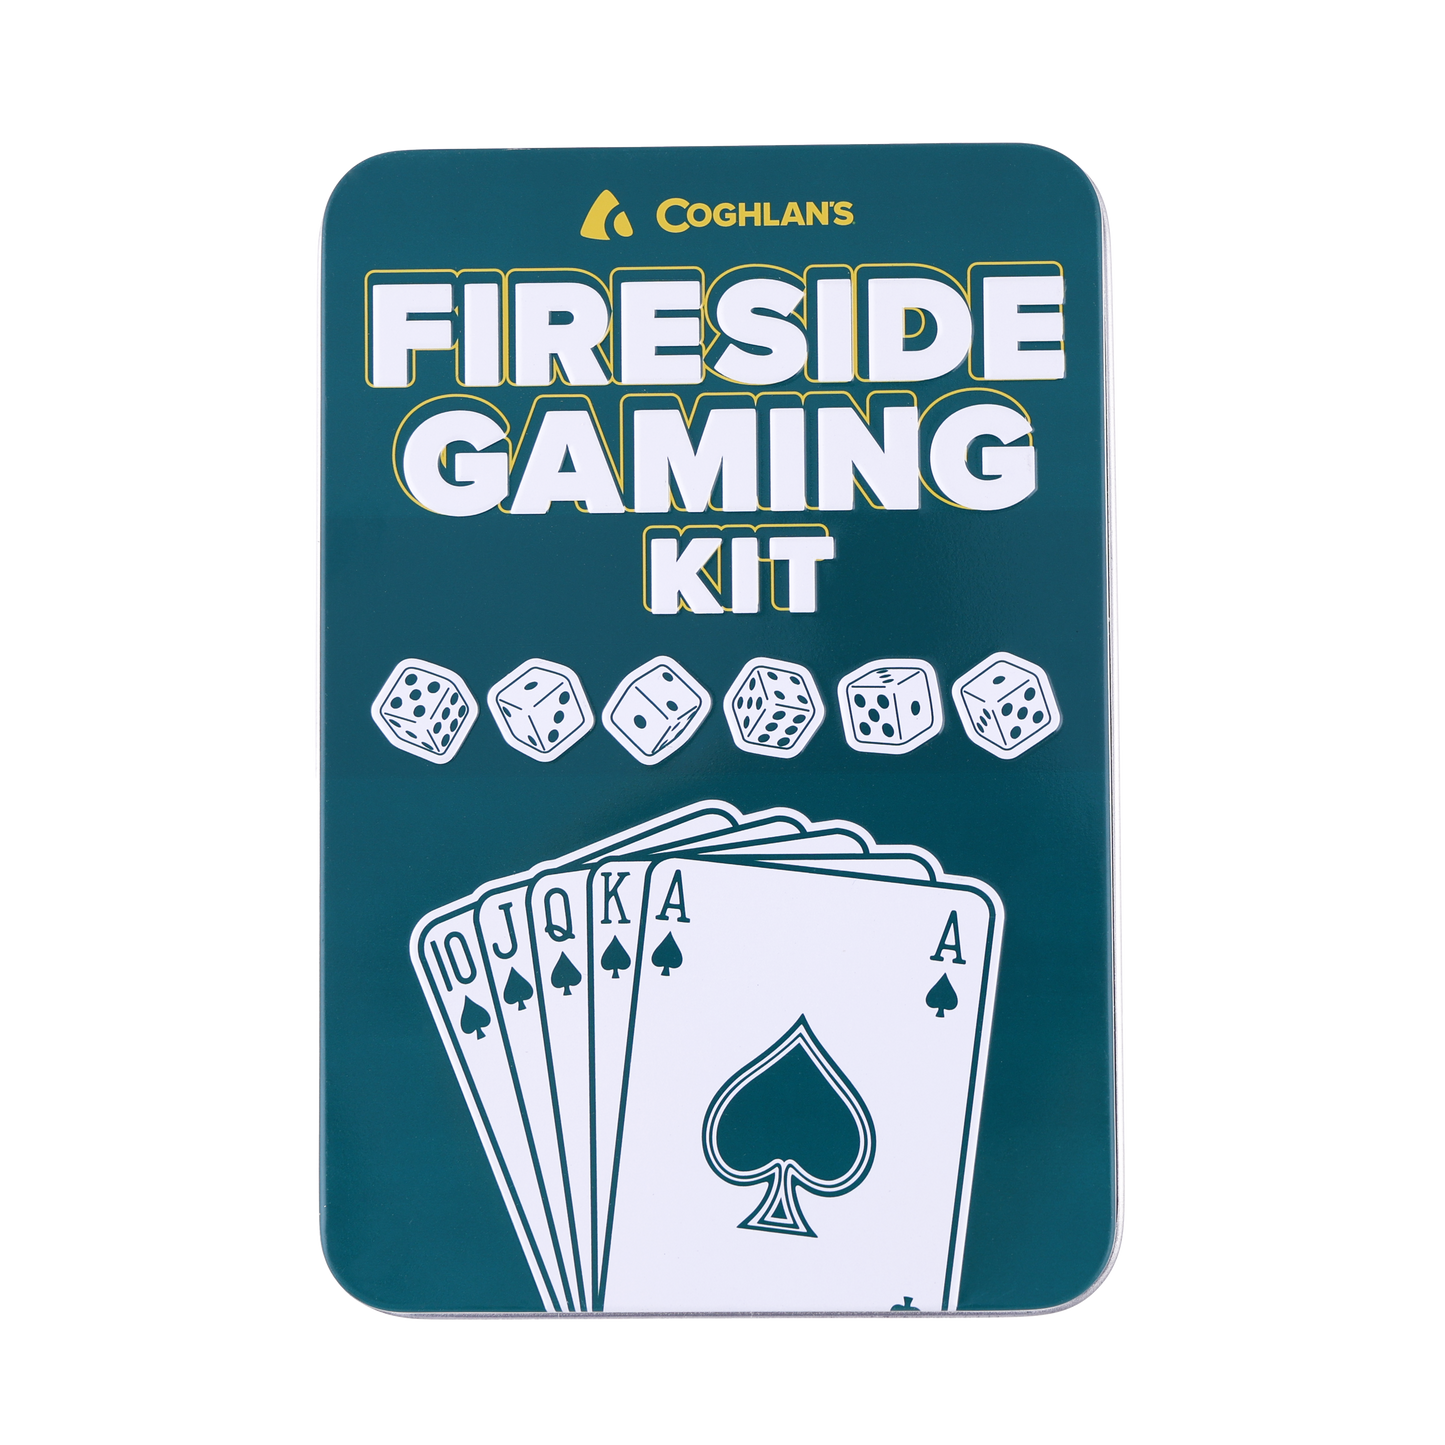 Fireside Gaming Kit